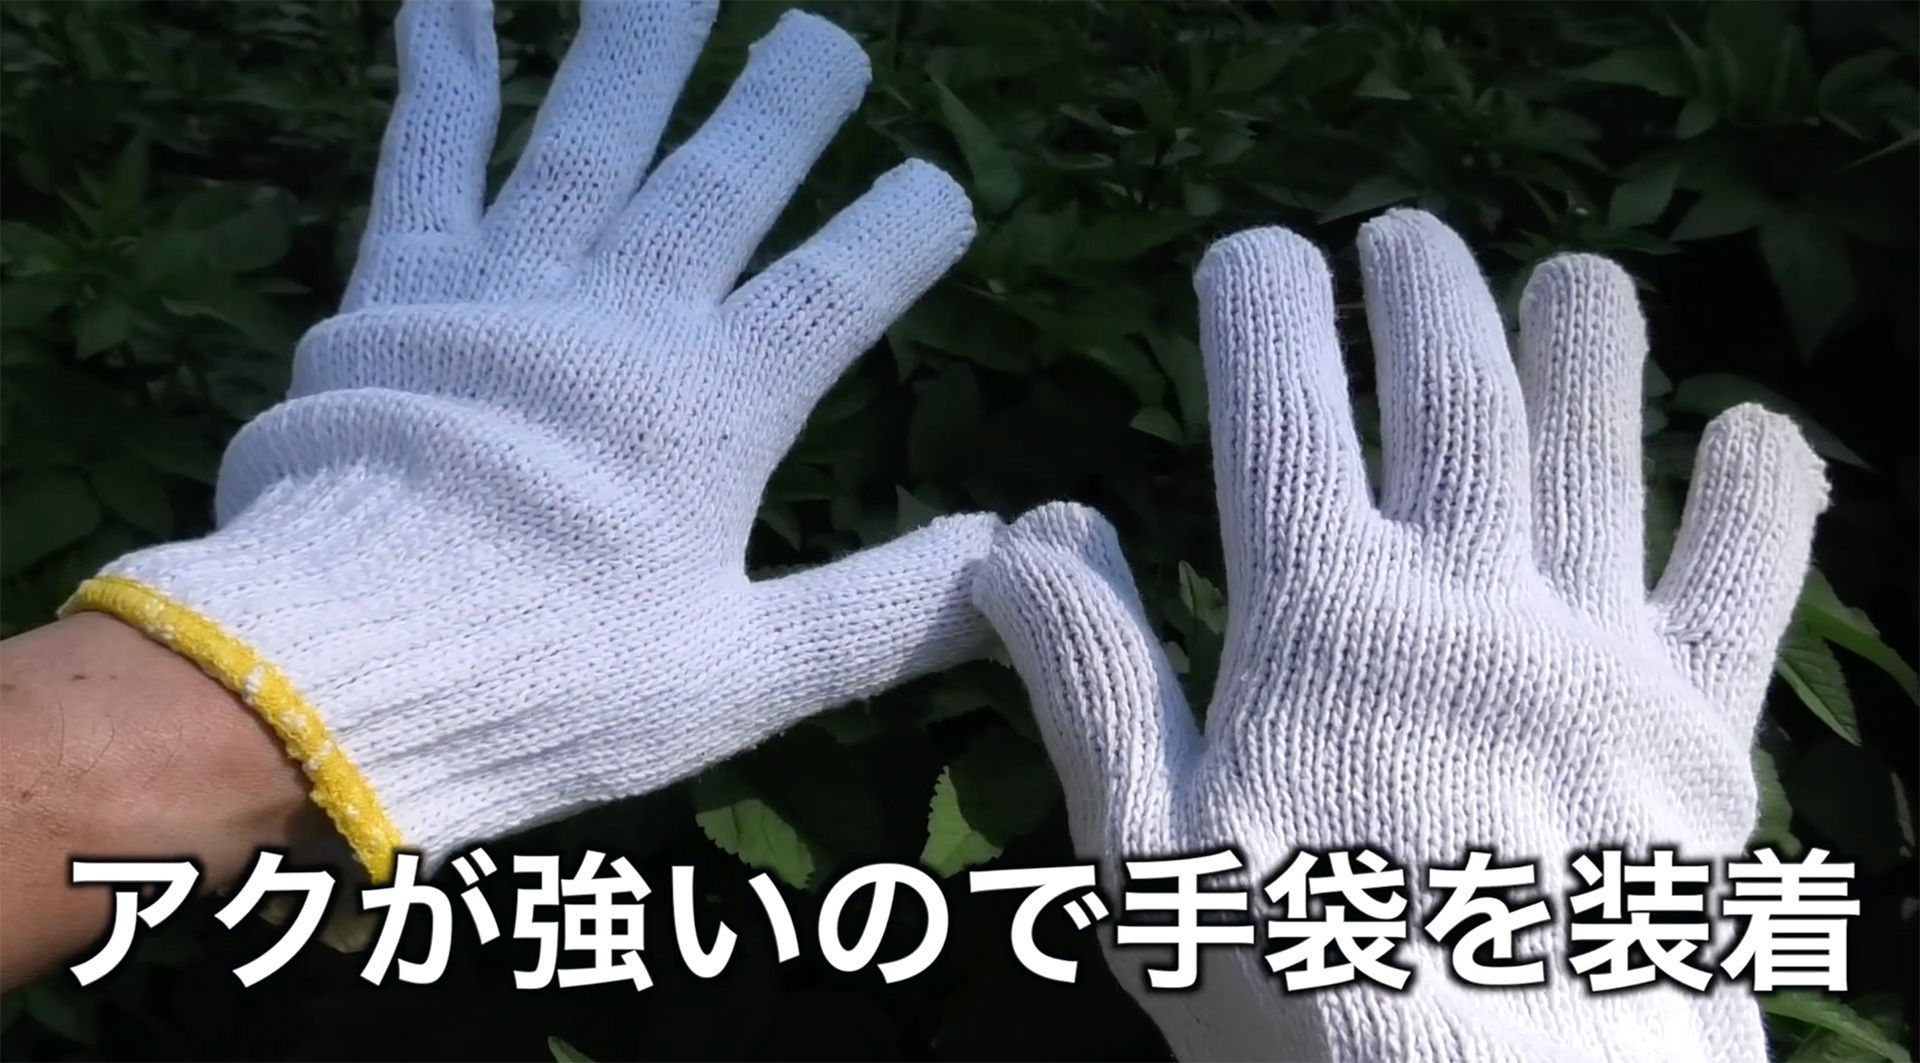 アクで指先が汚れるのを防ぐため摘み取る時は手袋を装着